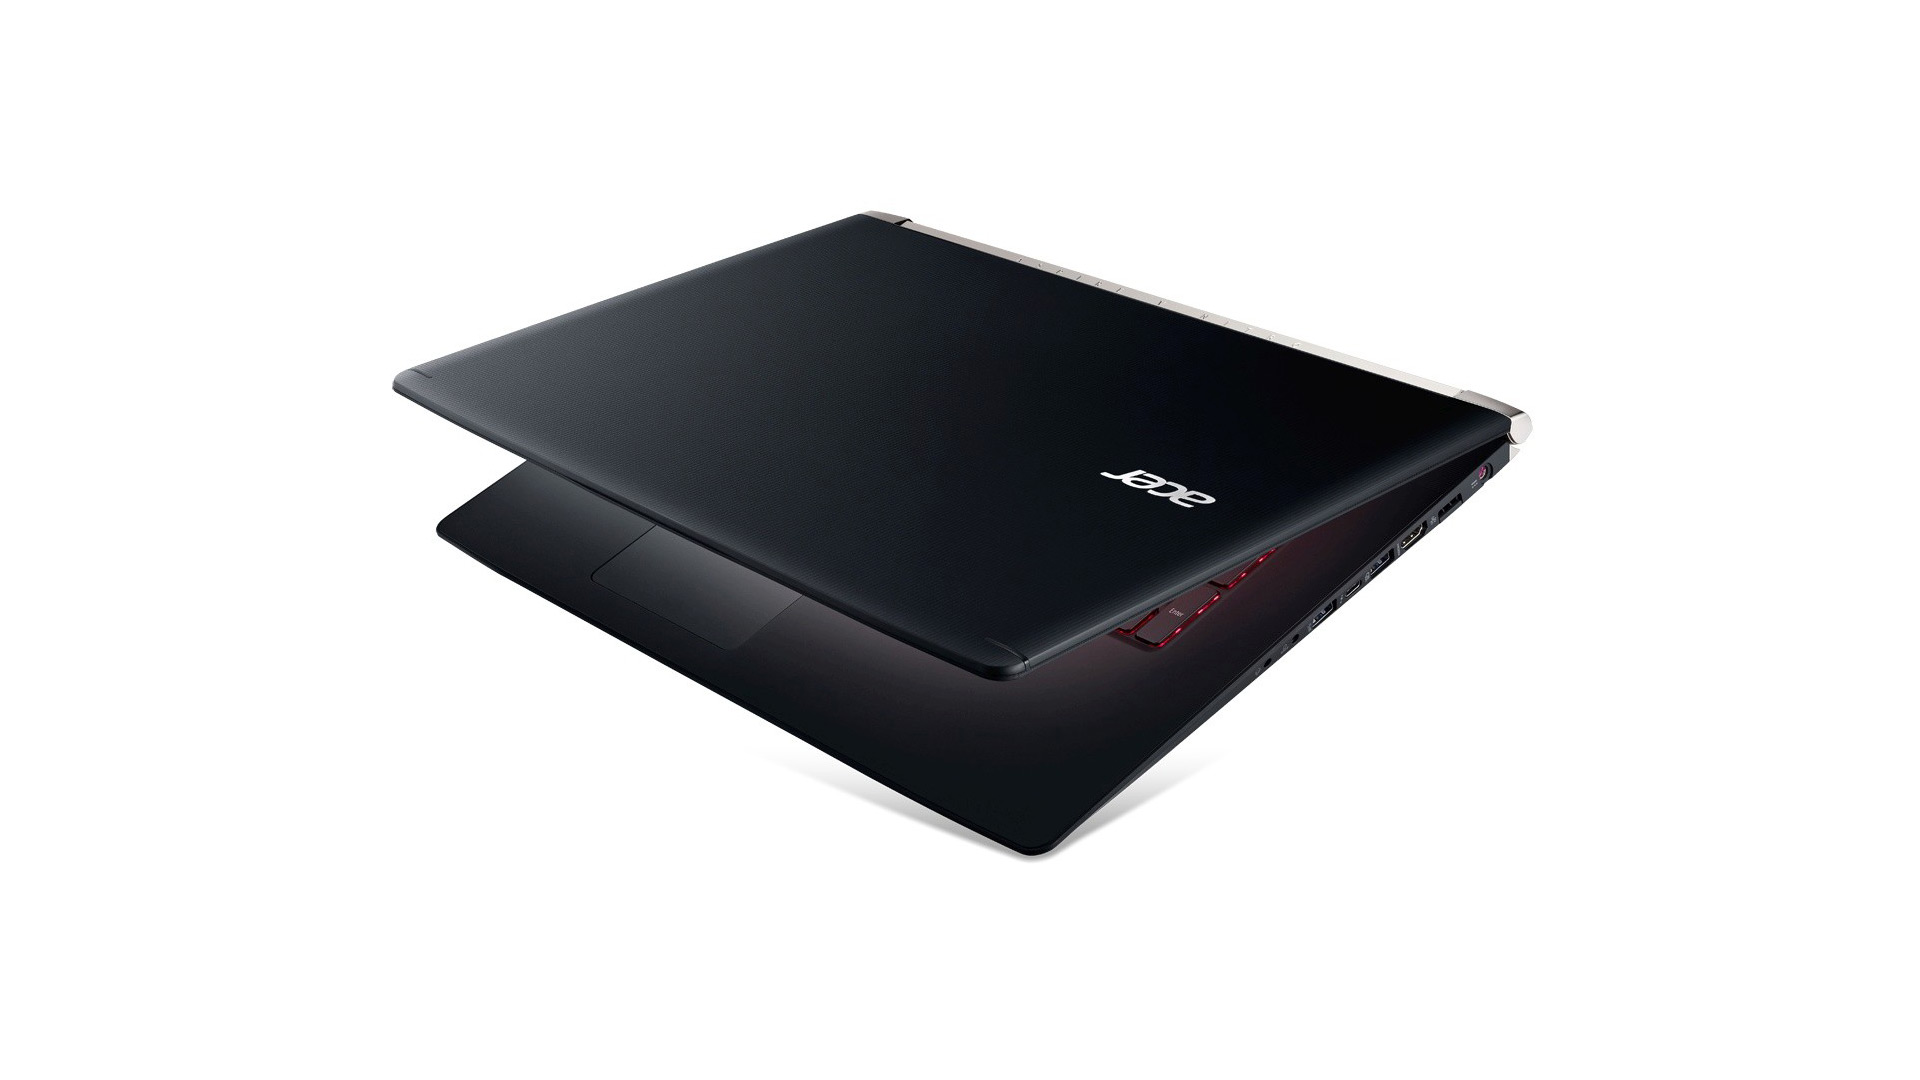 Notebooky Acer Aspire V Nitro brána do herního světa 126221